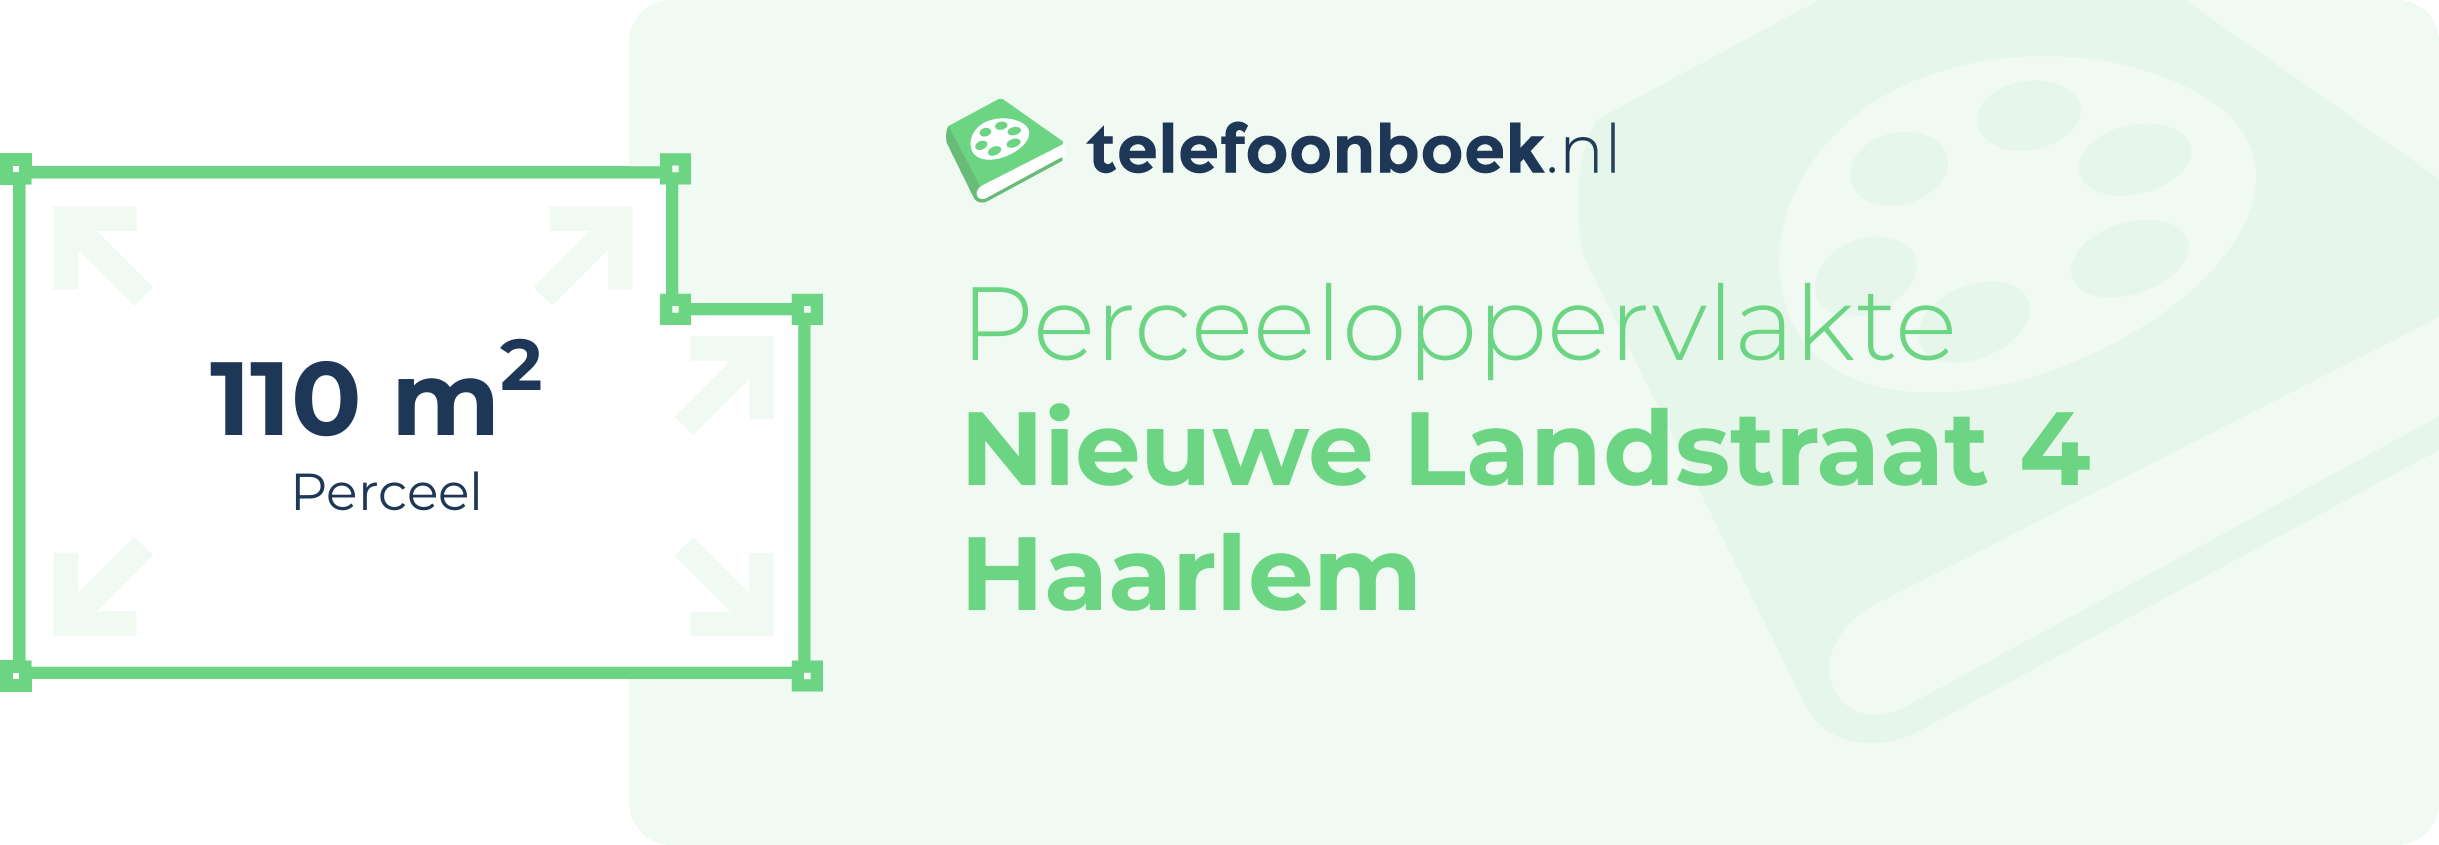 Perceeloppervlakte Nieuwe Landstraat 4 Haarlem